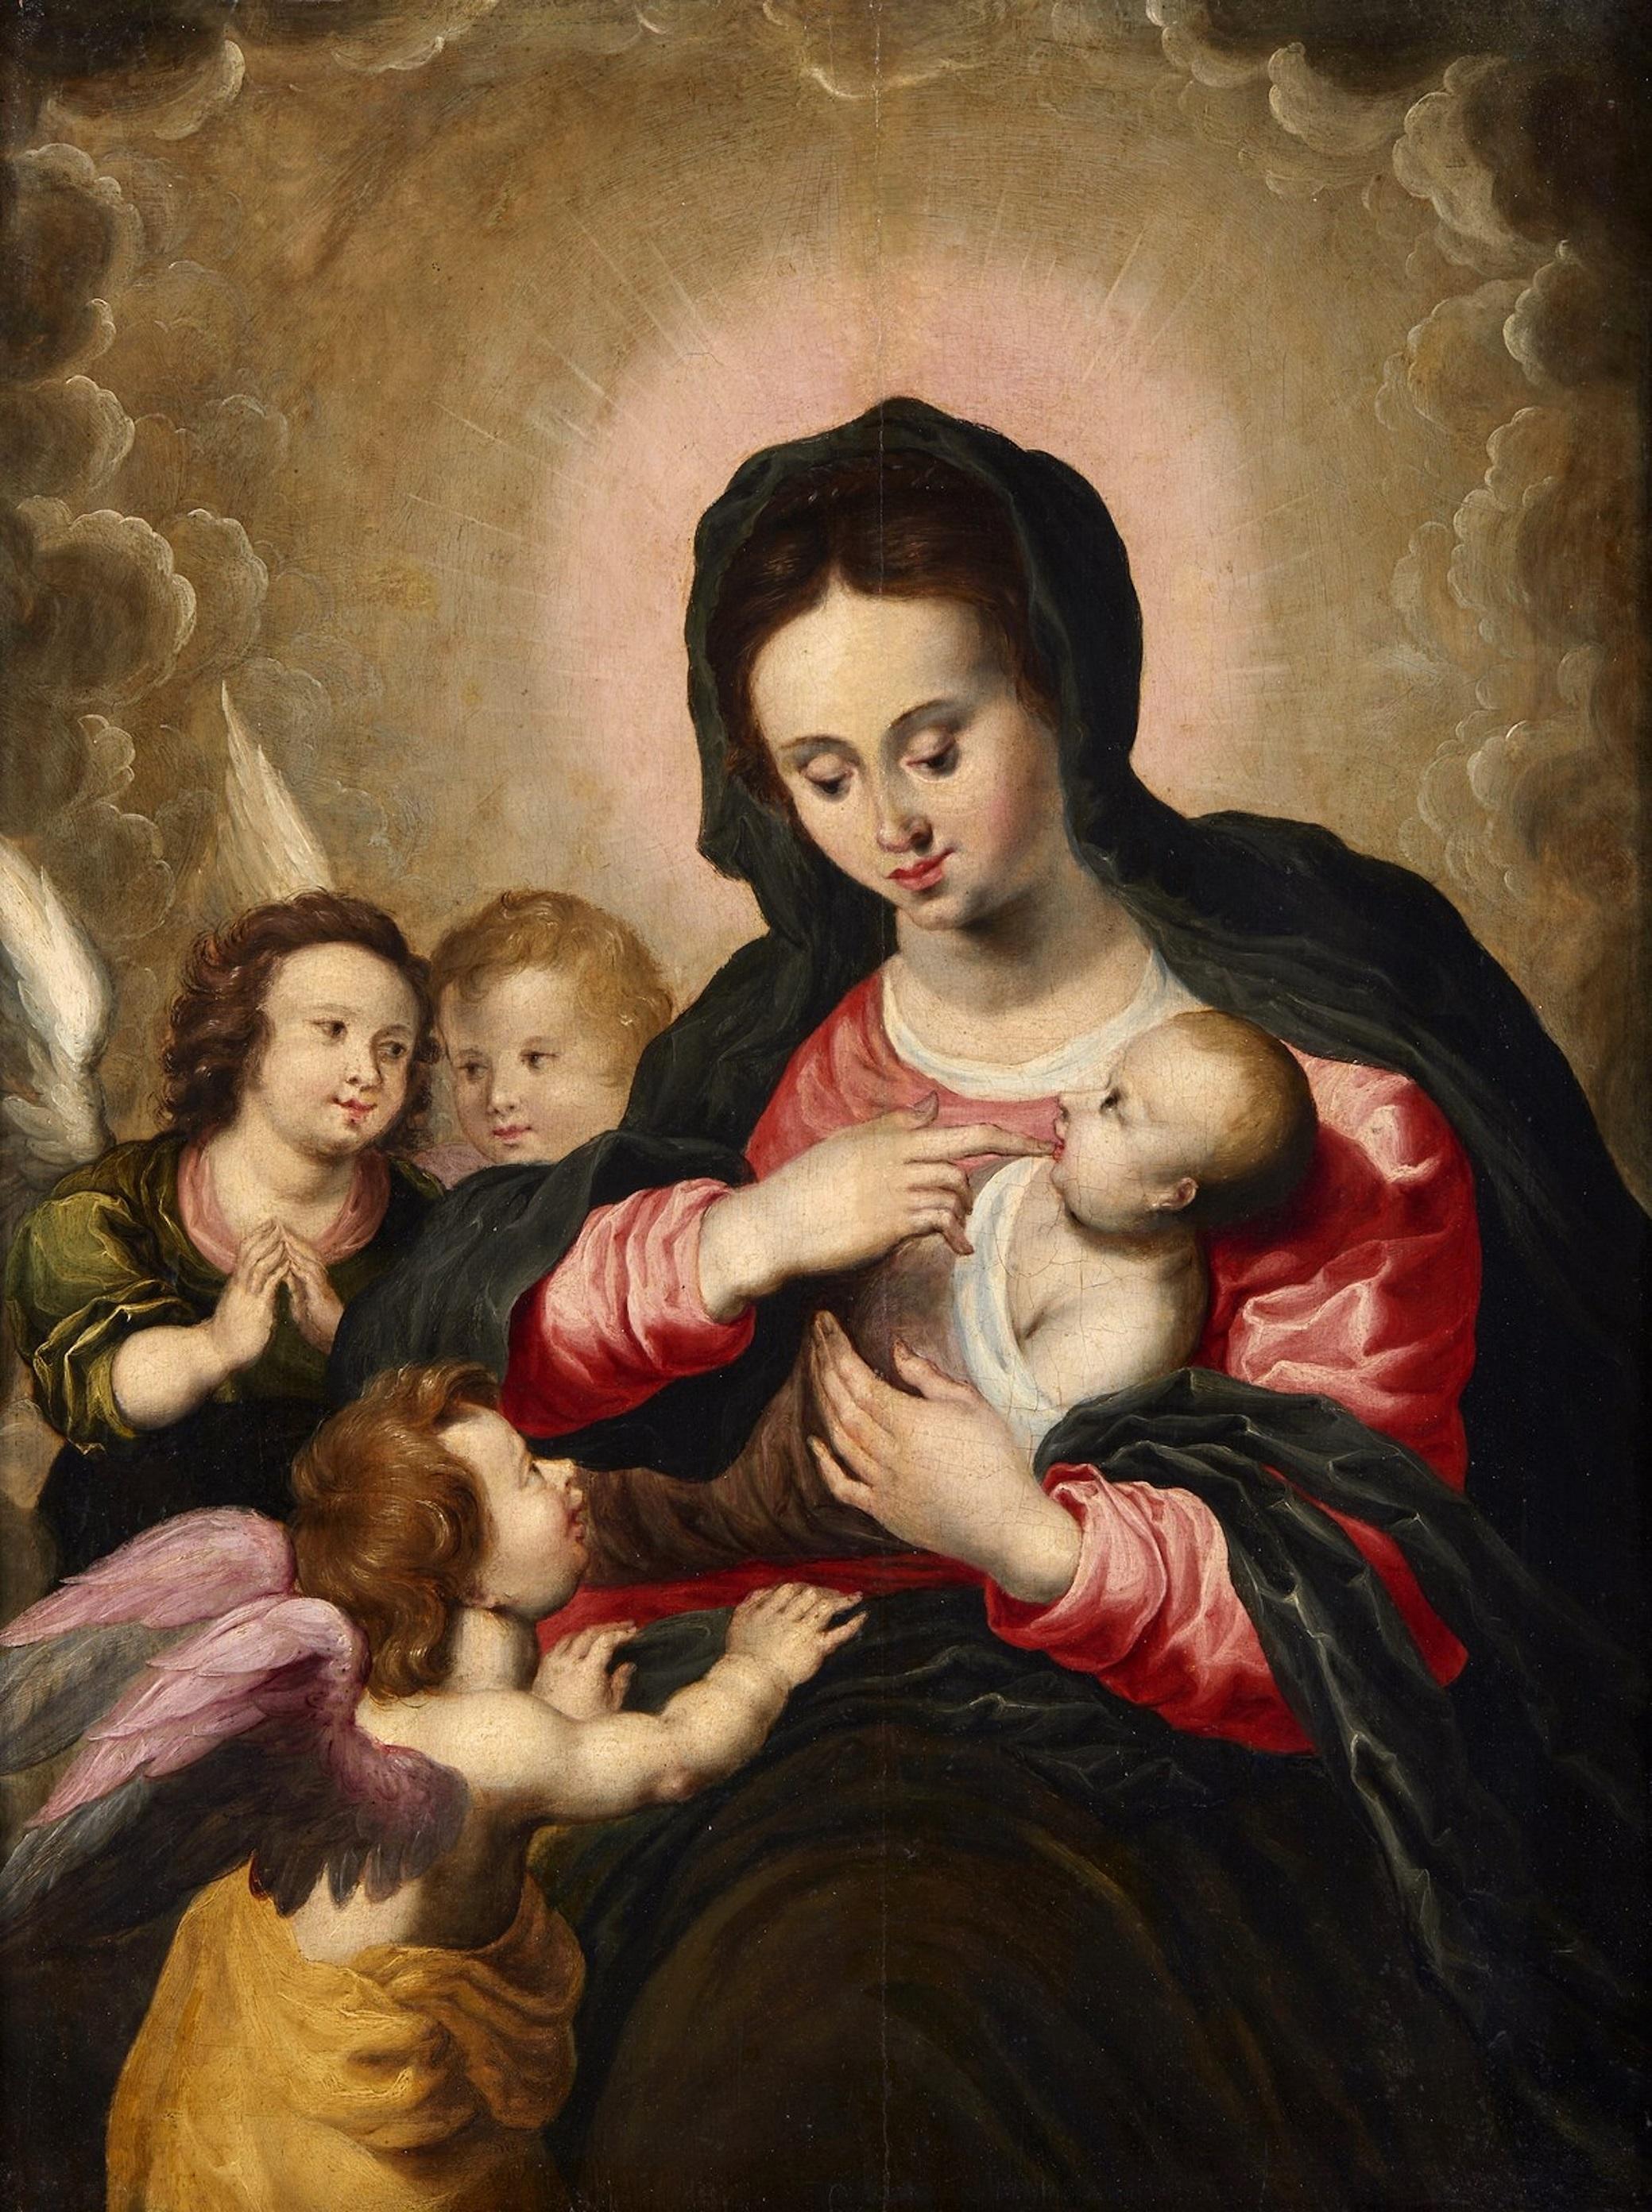 Madonna Angels Van Balen, Gemälde, Öl auf Tisch, Alter Meister, 16./17. Jahrhundert, Flämisch (Alte Meister), Painting, von Hendrick van Balen (Antwerp 1575 - 1632)